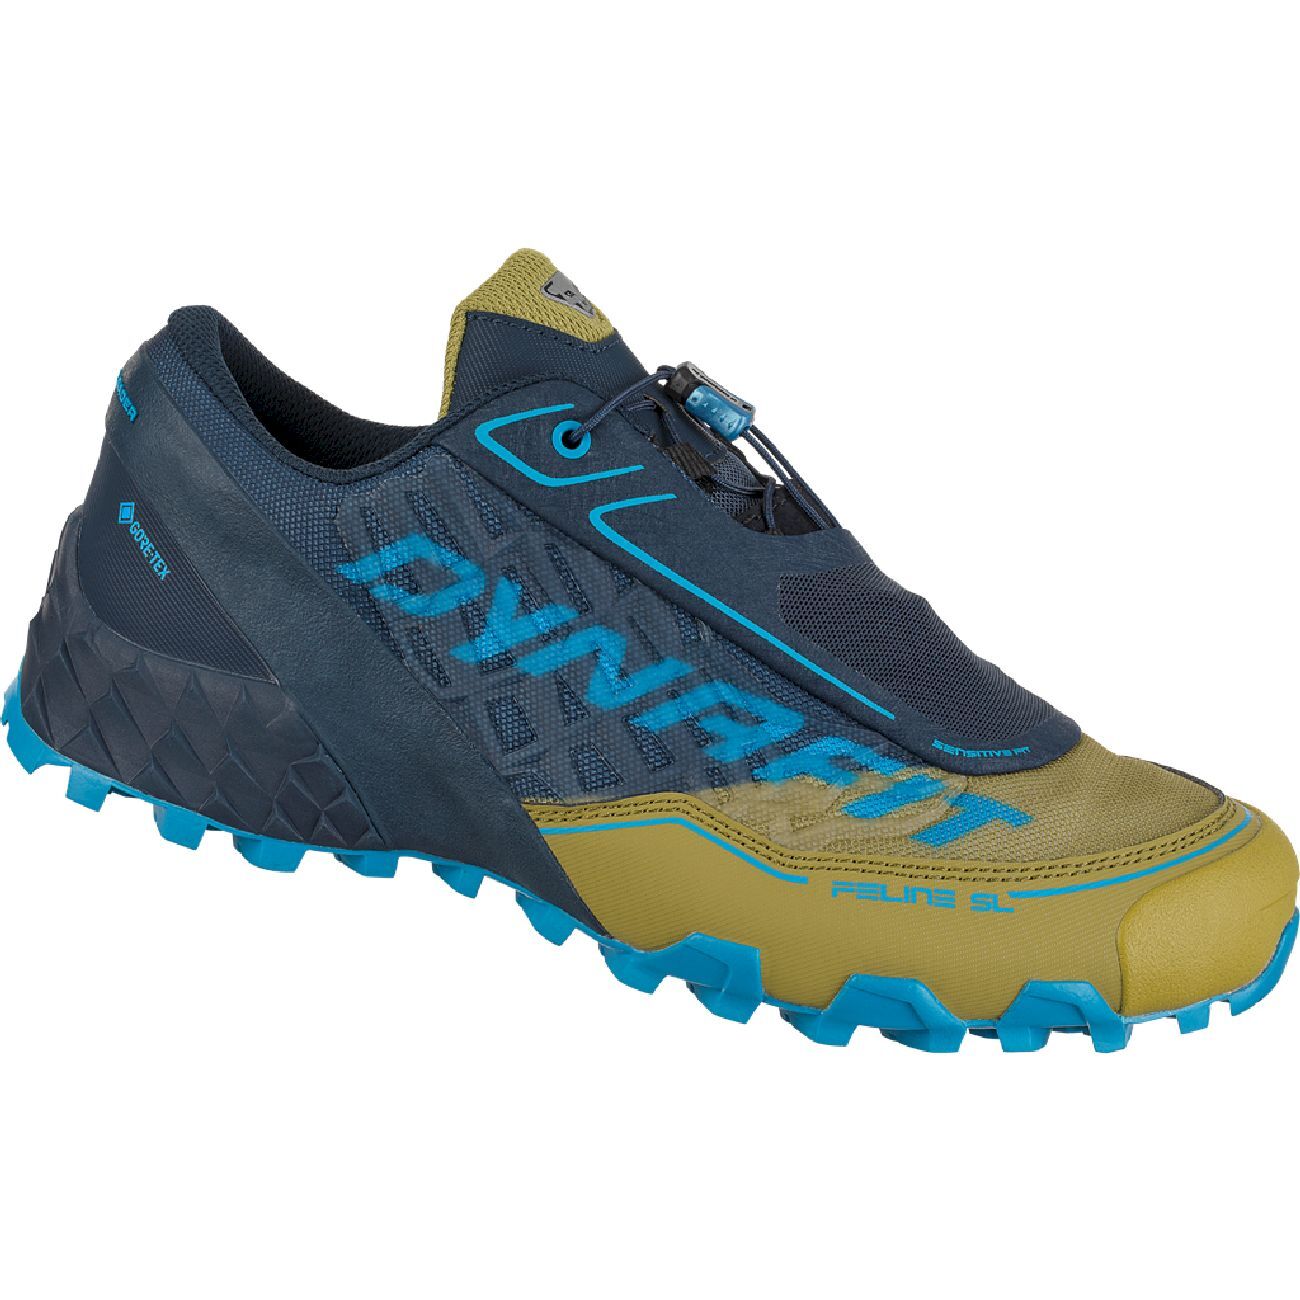 Dynafit Feline SL GTX - Trail running shoes - Men's